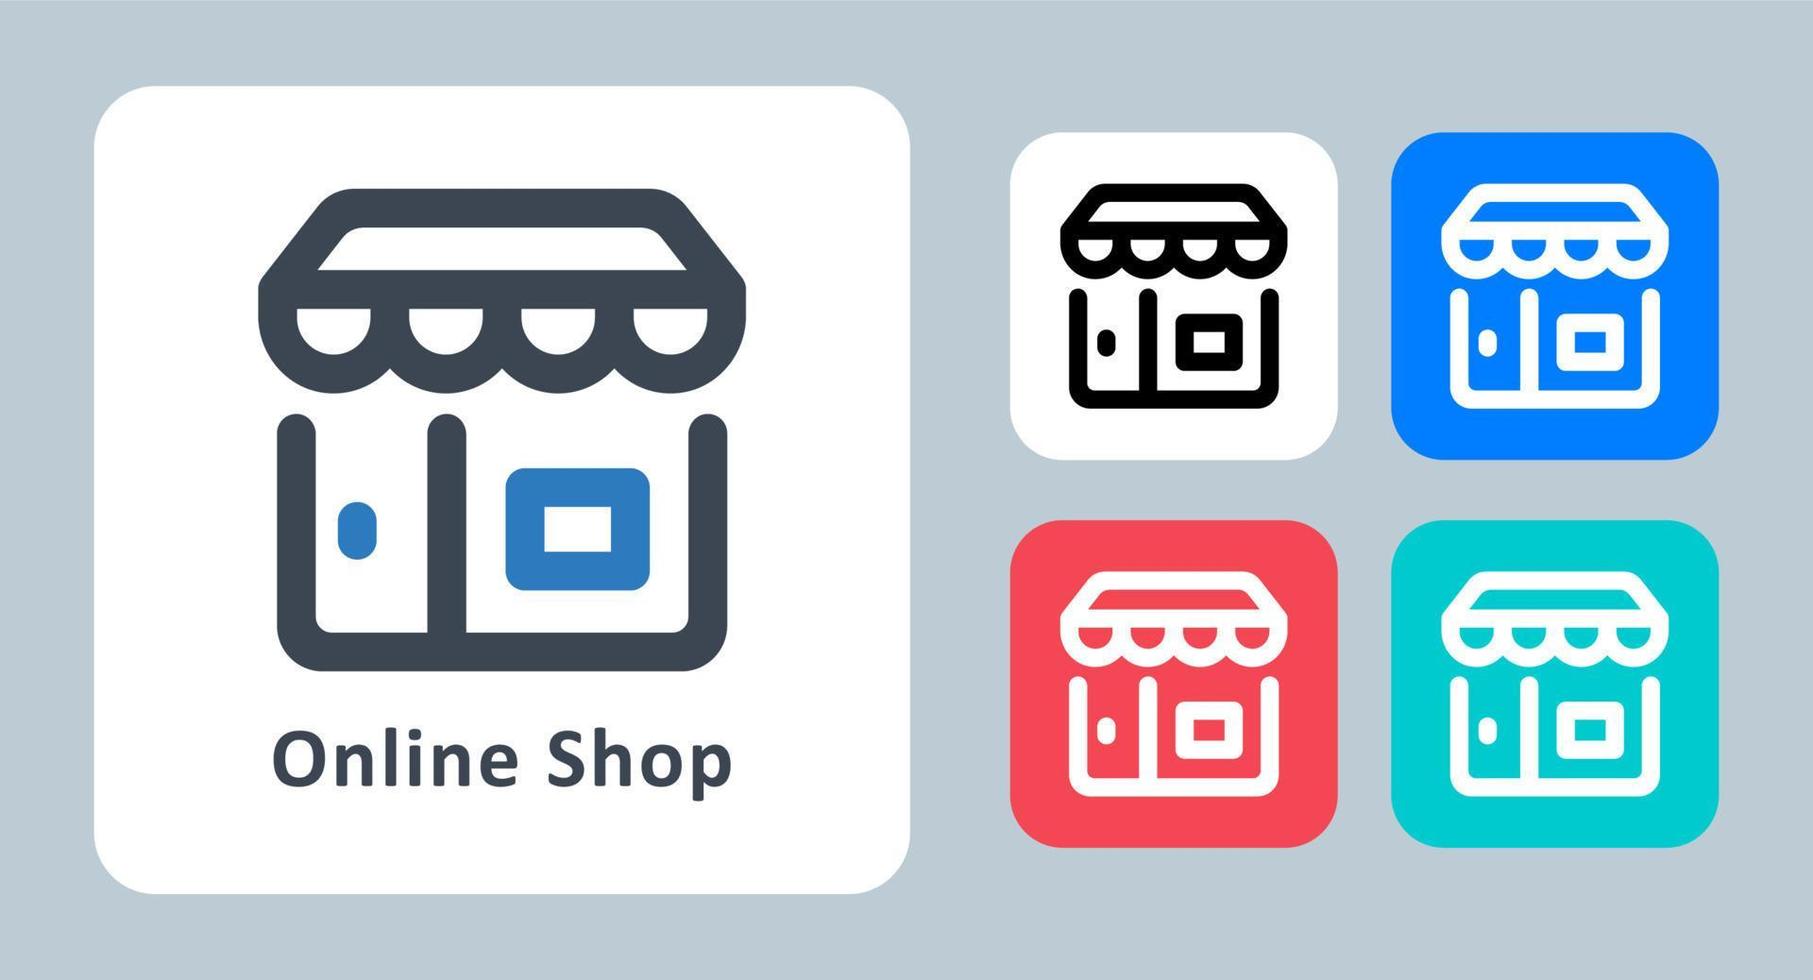 icona del negozio - illustrazione vettoriale. negozio, shopping, negozio, mercato, acquisto, vendita, acquisto, e-commerce, linea, contorno, piatto, icone. vettore